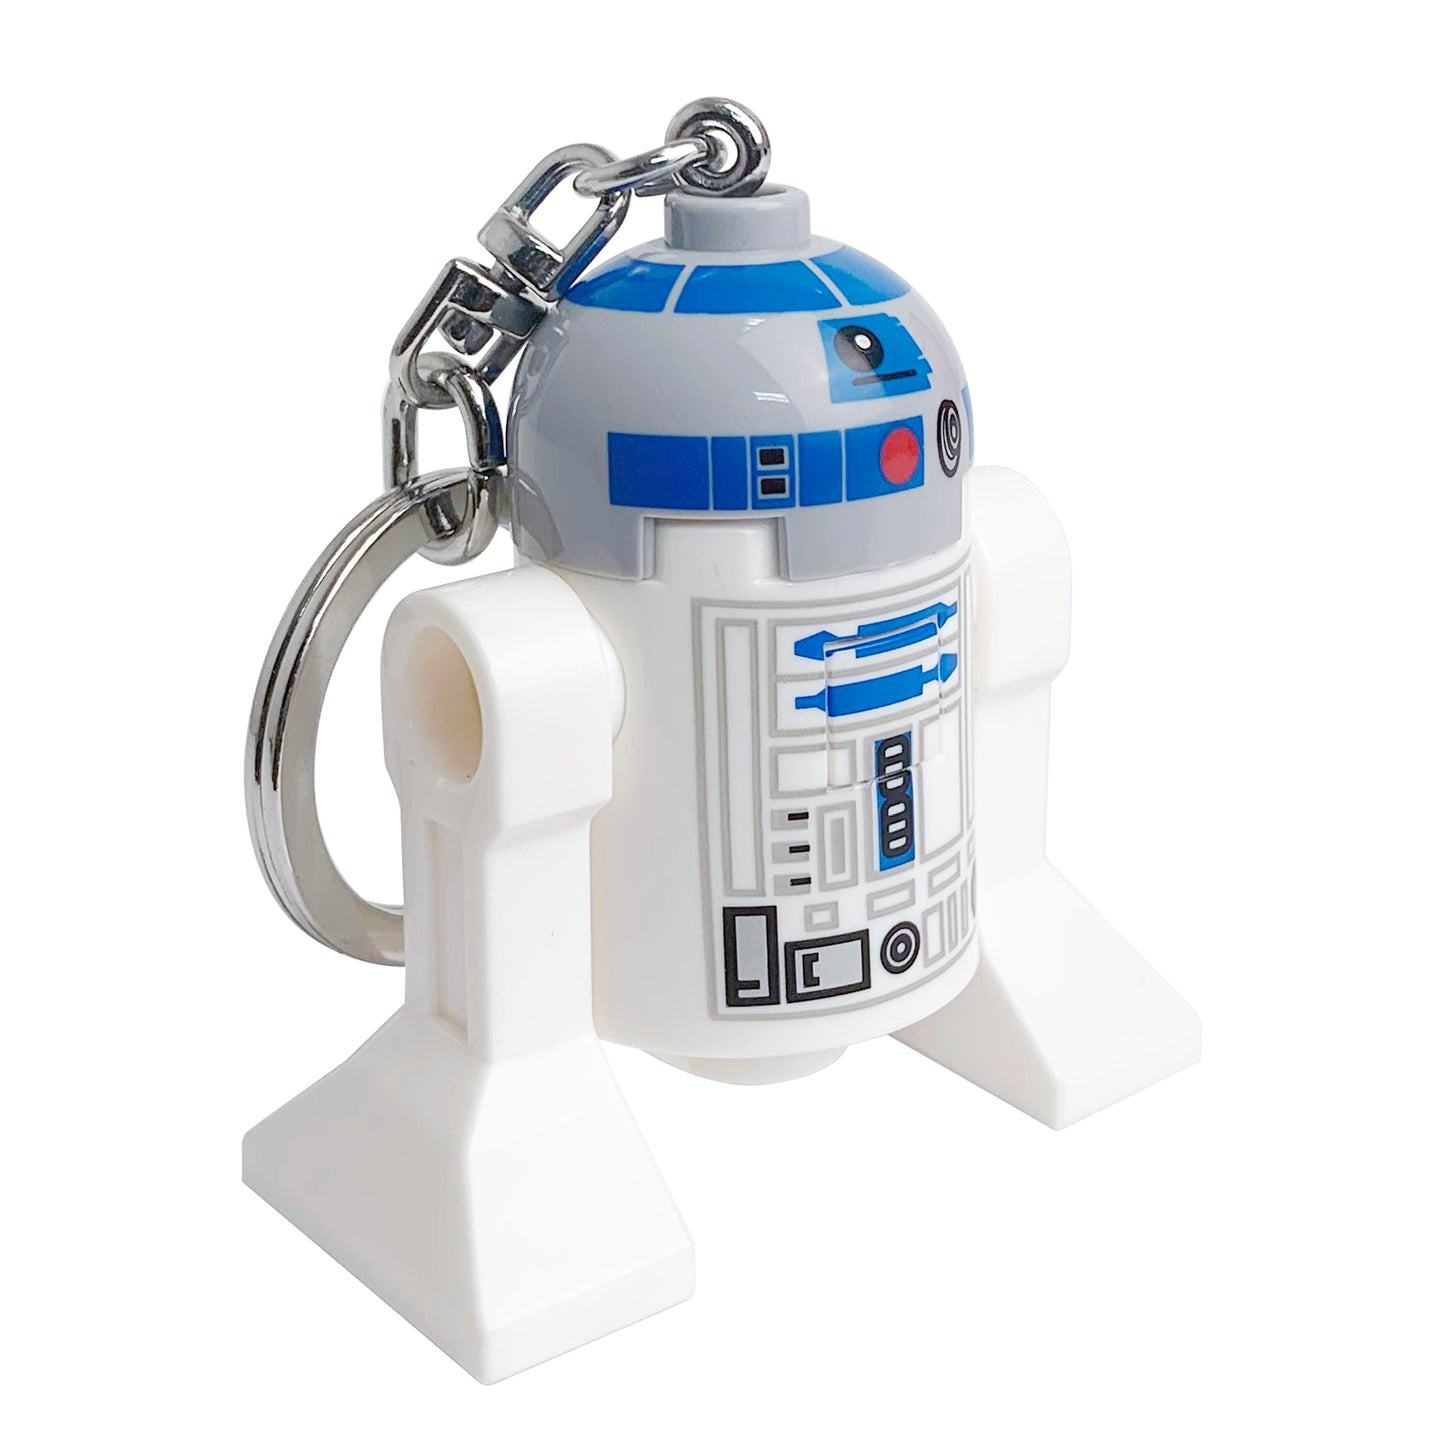 IQ レゴ  スターウォーズ R2-D2 キーライト (KE21H)